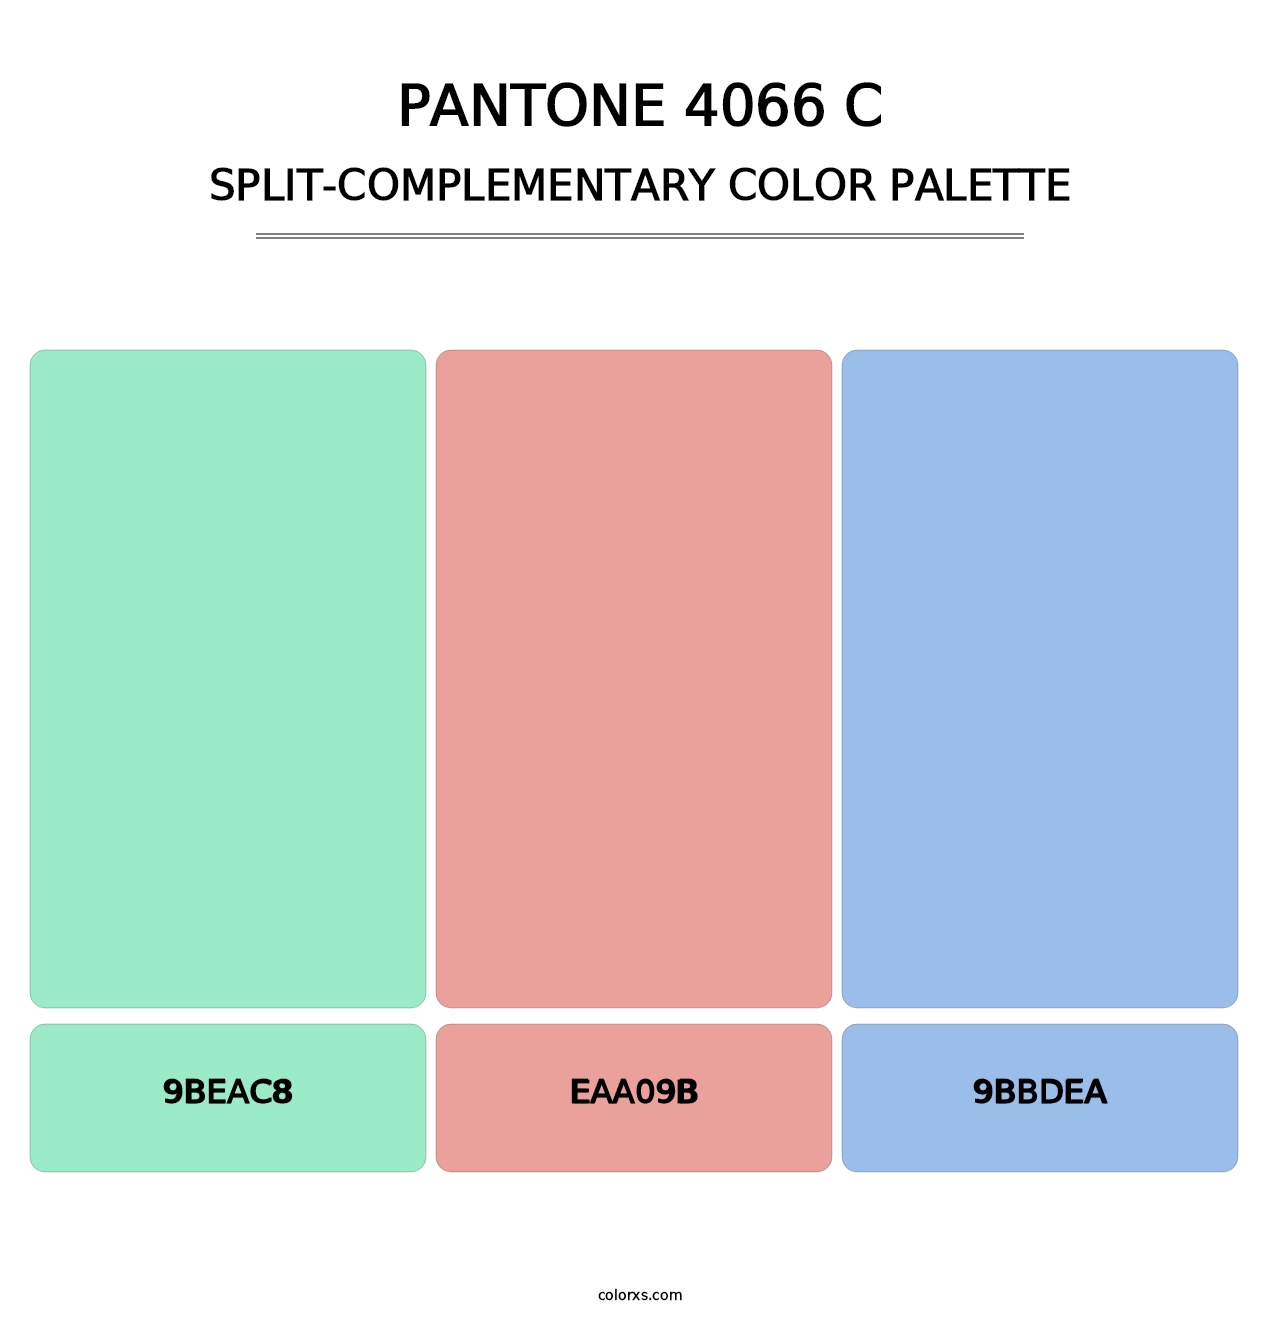 PANTONE 4066 C - Split-Complementary Color Palette